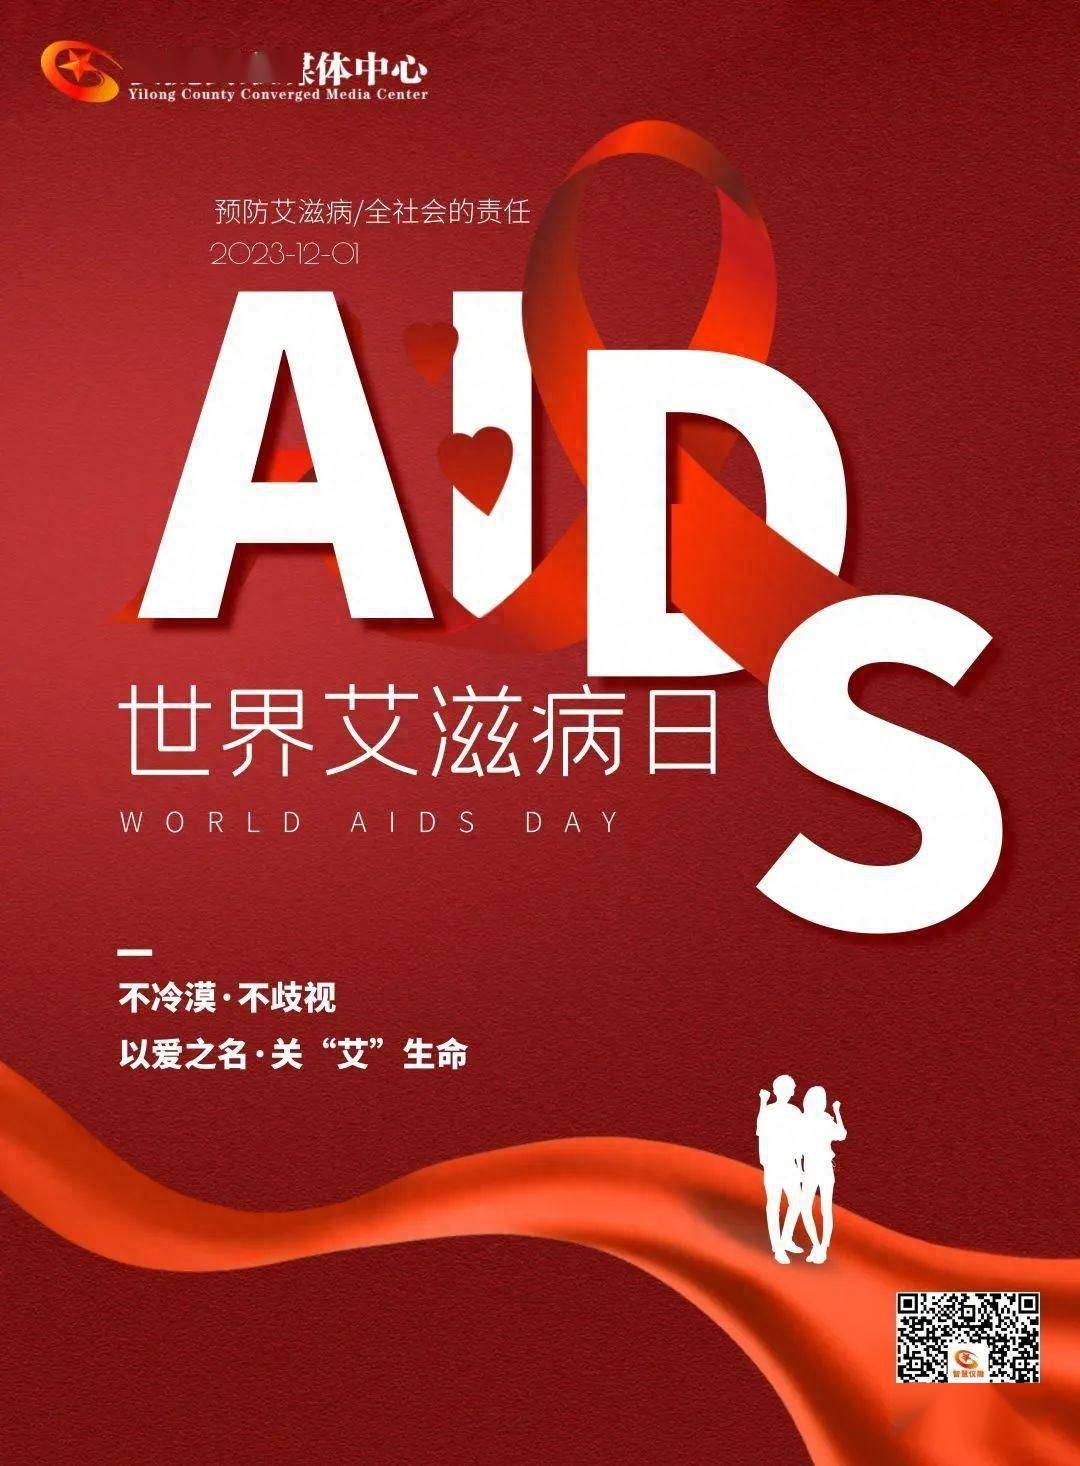 治愈的艾滋病患者_治愈艾滋病_治愈的艾滋病